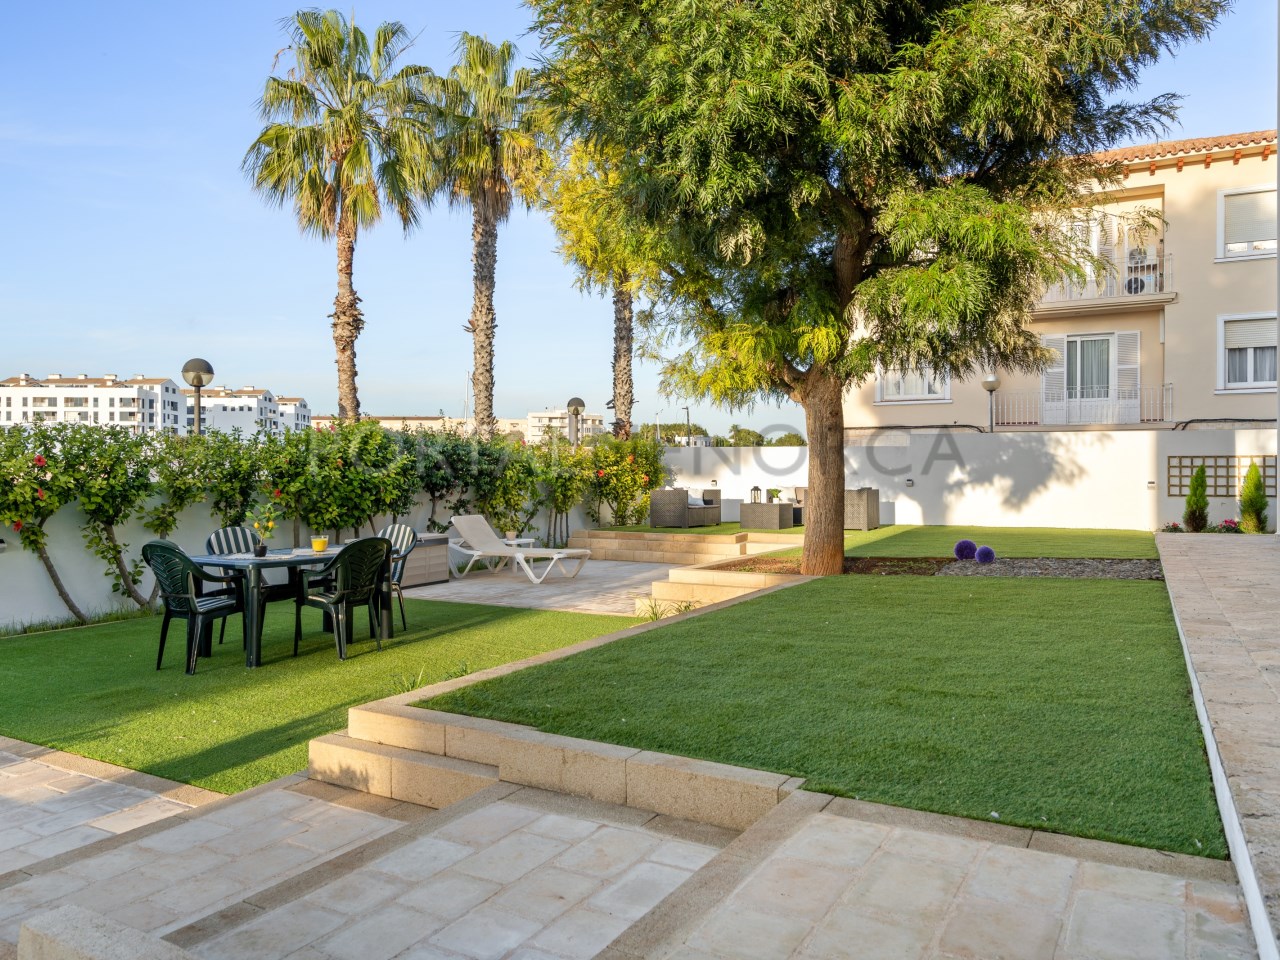 Villa for sale in the port of Ciutadella